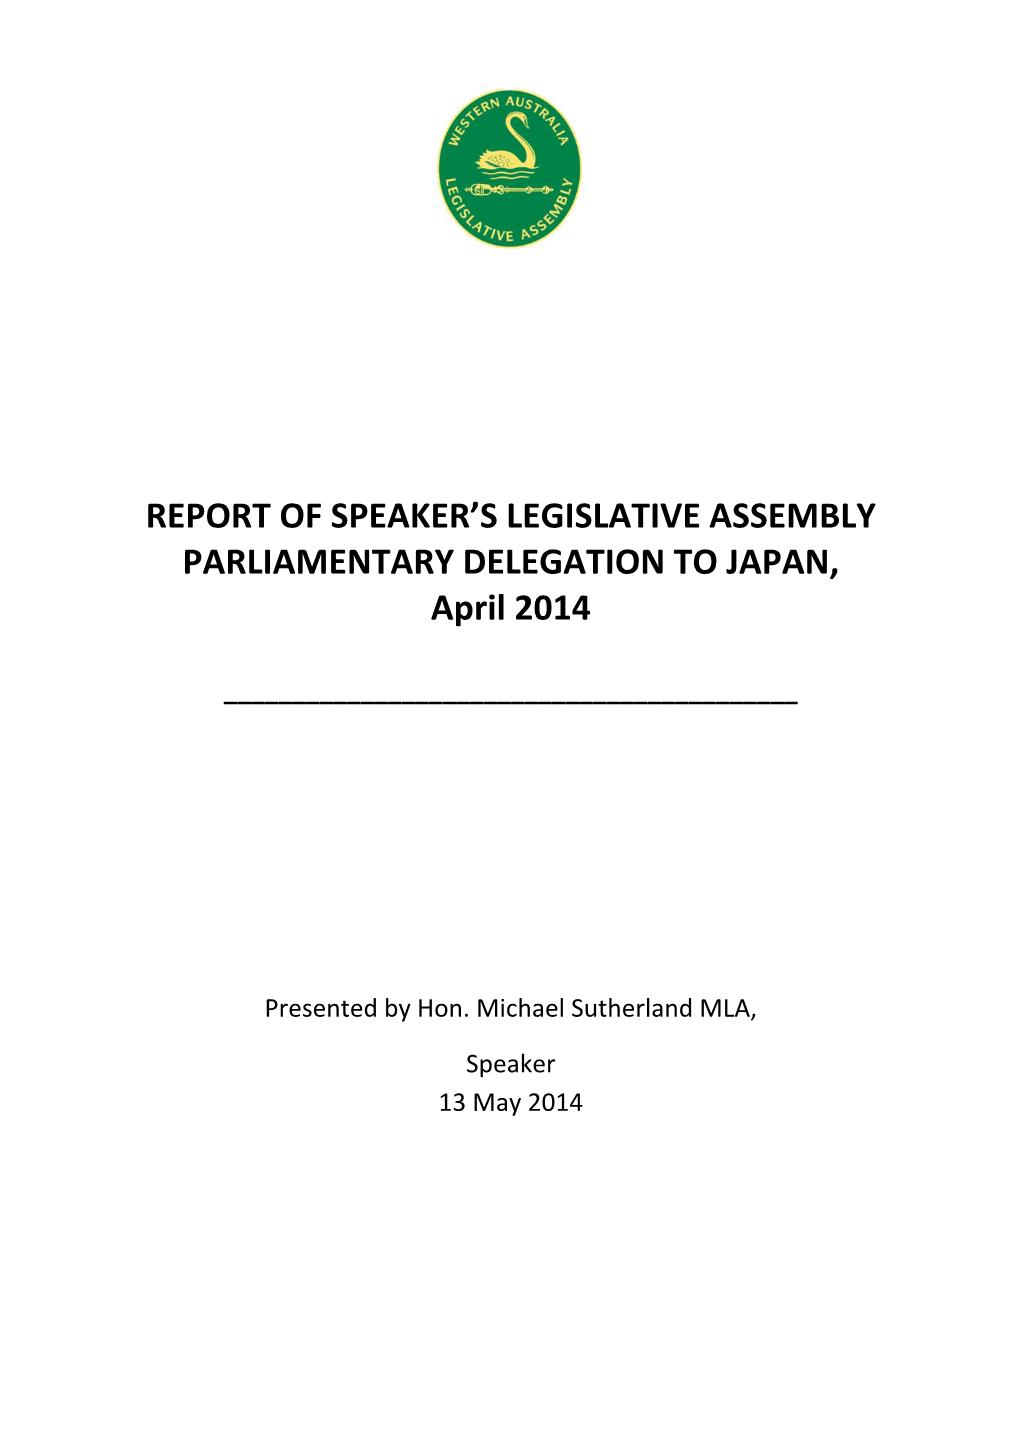 Report of Speaker's Legislative Assembly